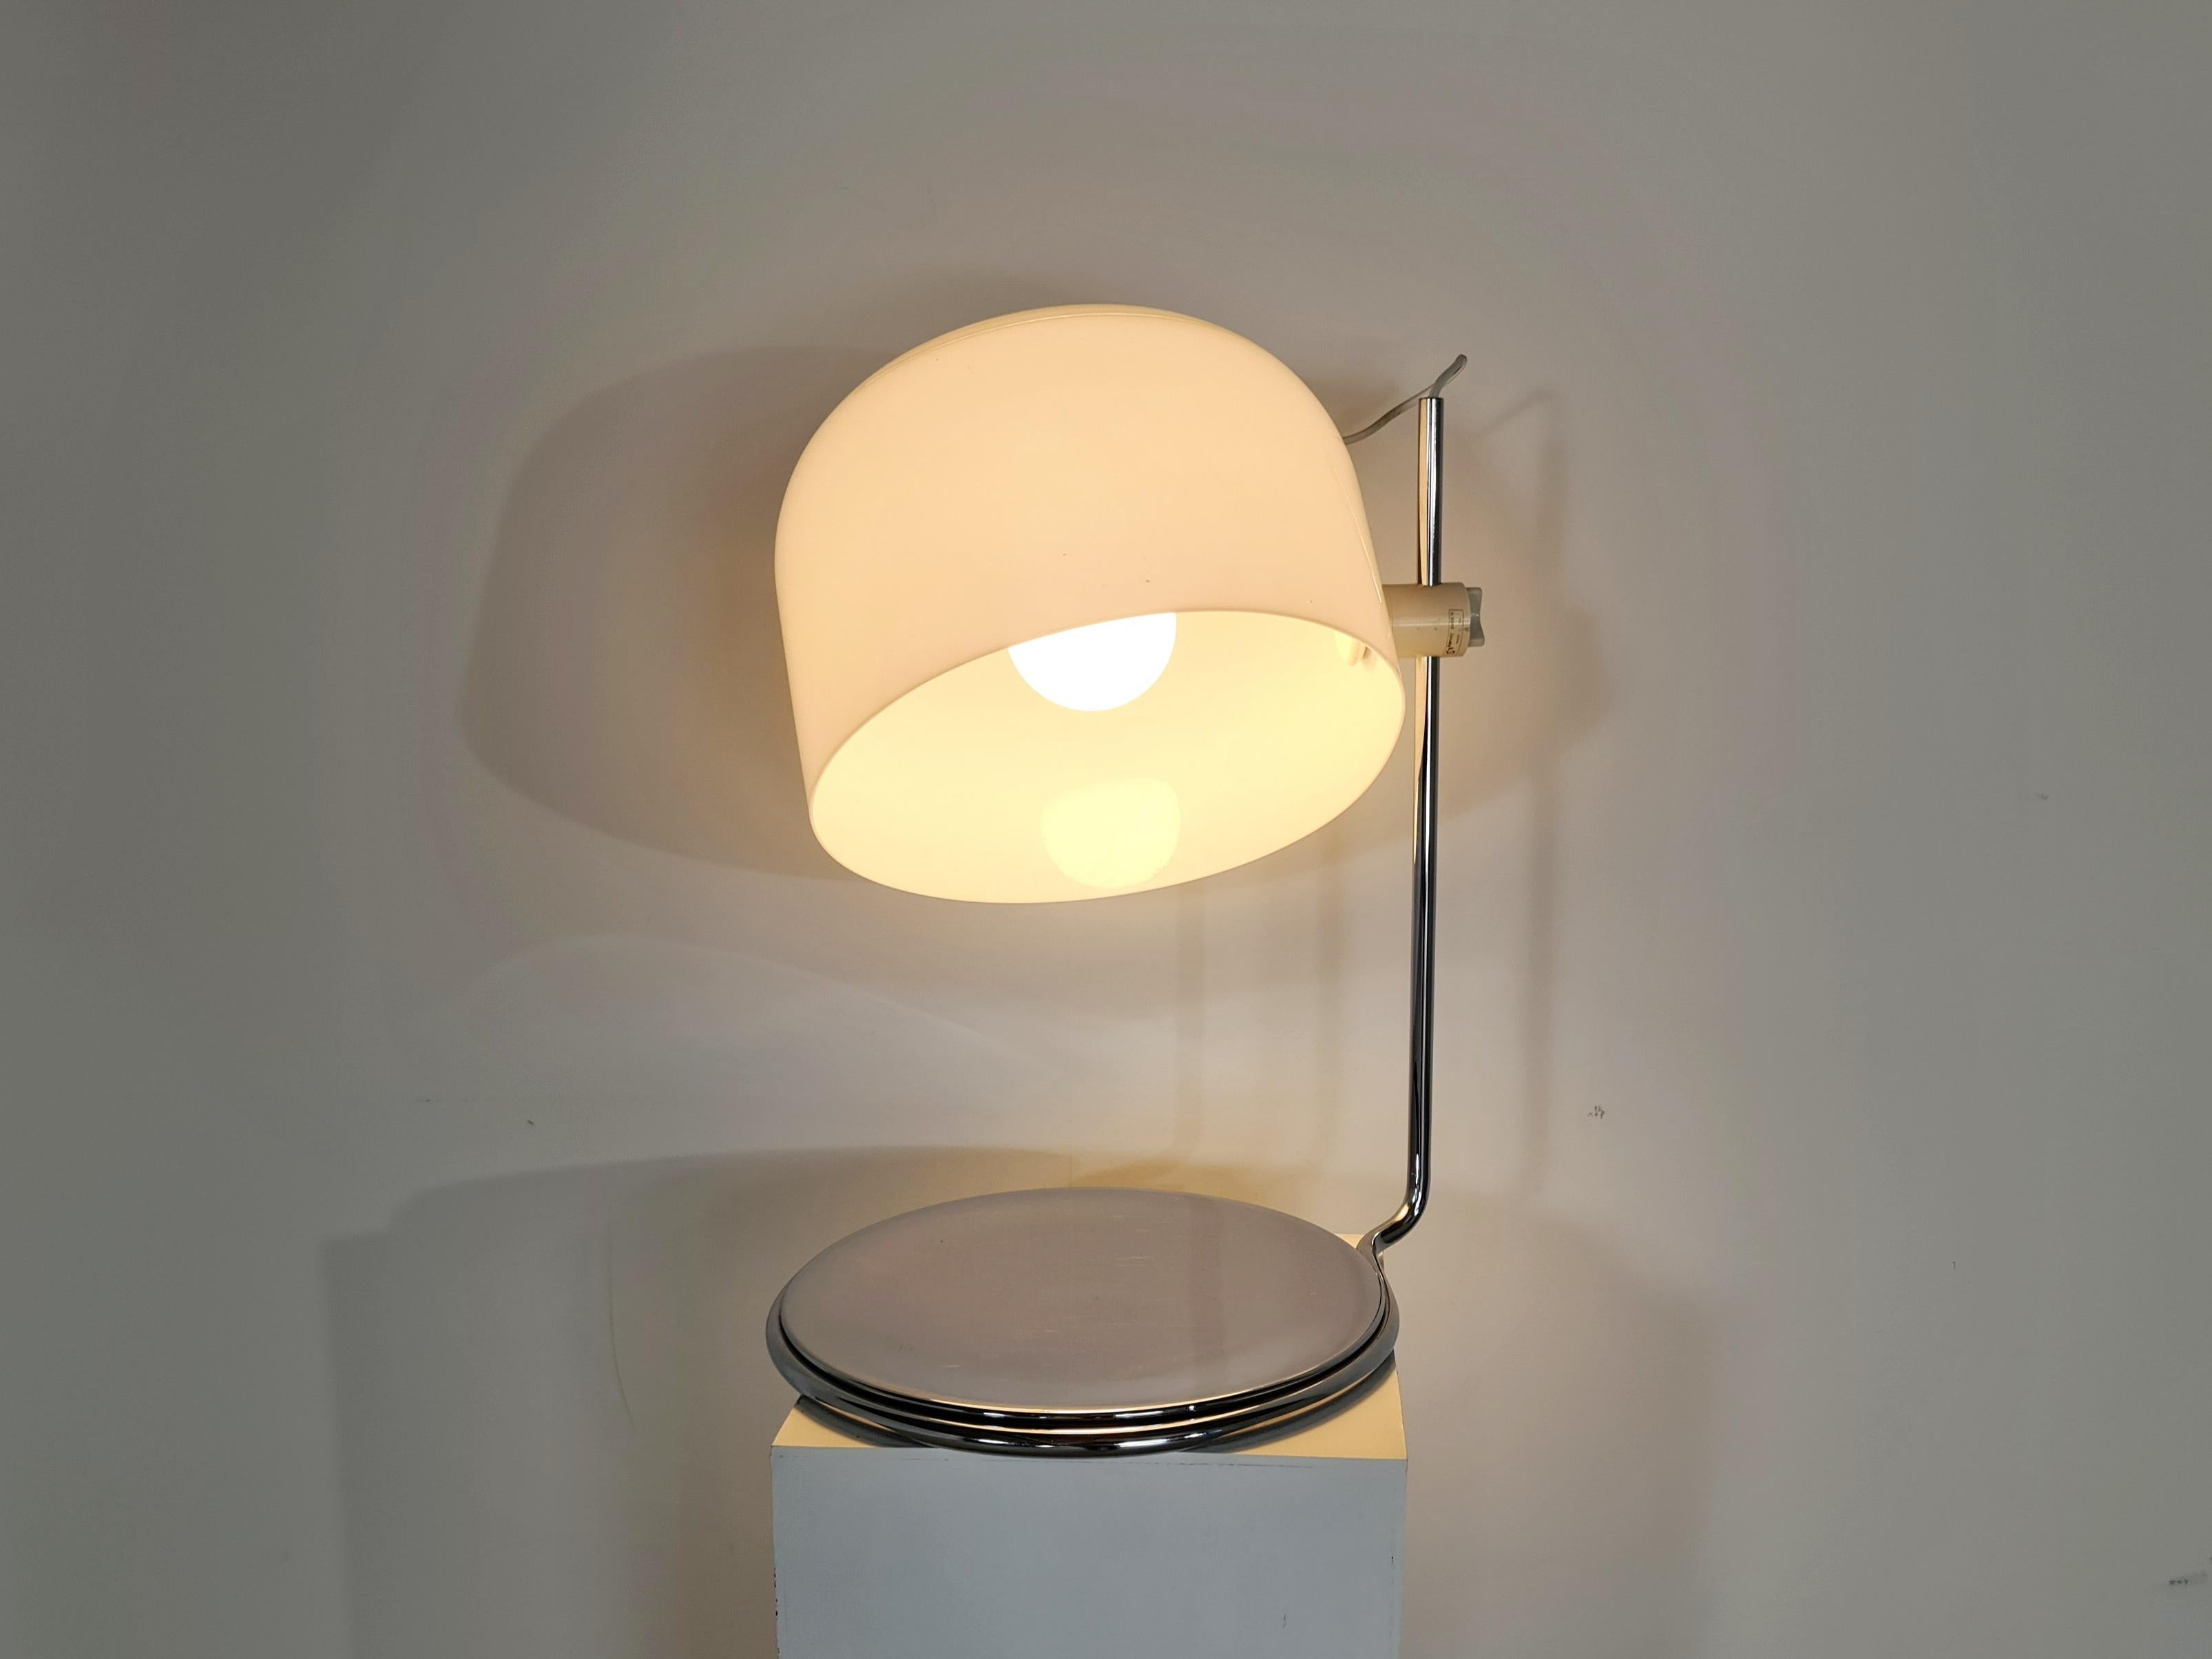 Rare lampe de table conçue dans les années 60 par Harvey Guzzini pour Guzzini, Italie. Pied et cadre en métal chromé avec abat-jour en plastique blanc. L'abat-jour est très réglable en position et donne une belle lumière lorsqu'il est allumé.

Le